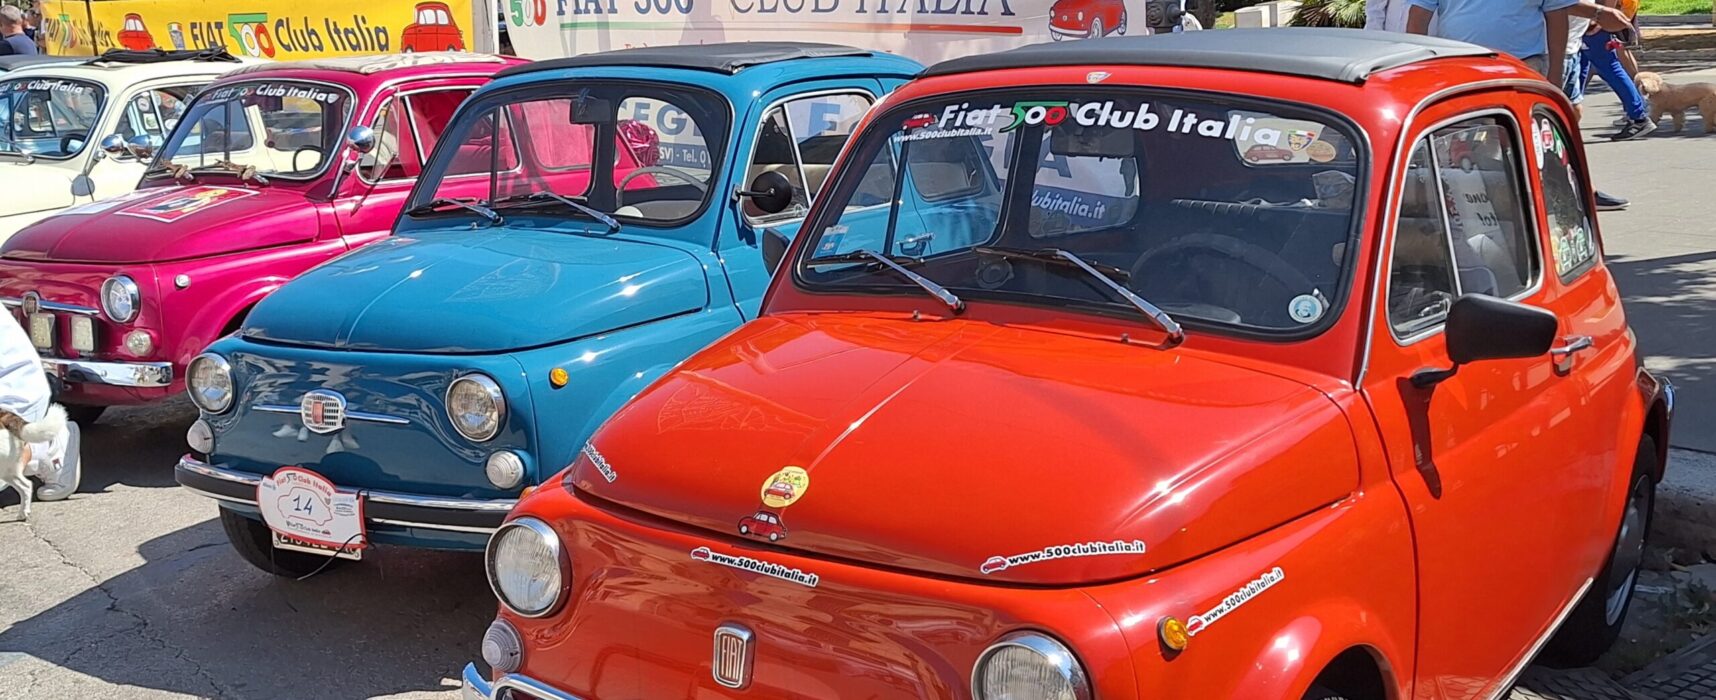 Raduno Fiat 500  a Bisceglie, successo di pubblico e consensi  / PHOTOGALLERY